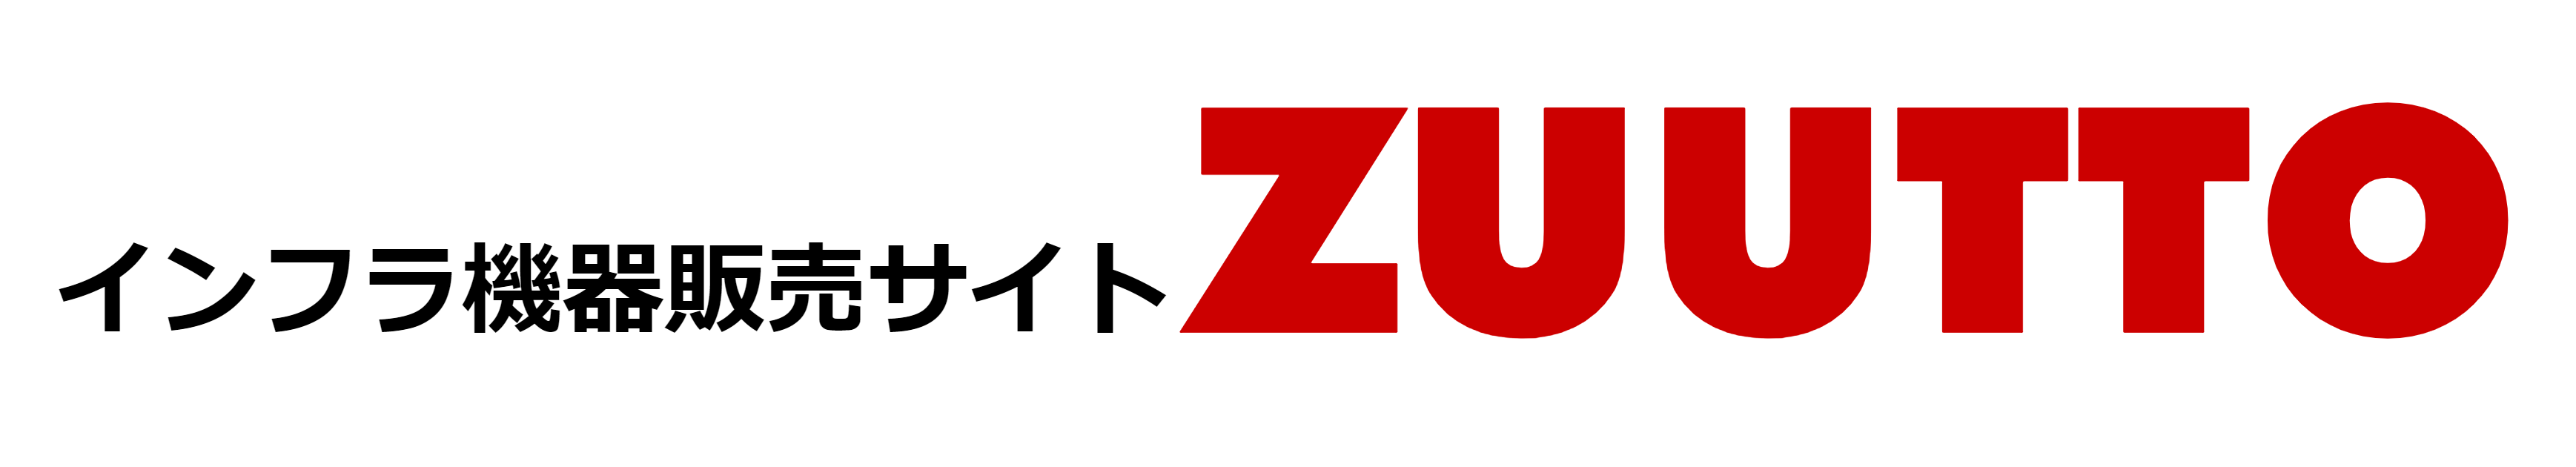 法人向けインフラ機器販売サイト ZUUTTO